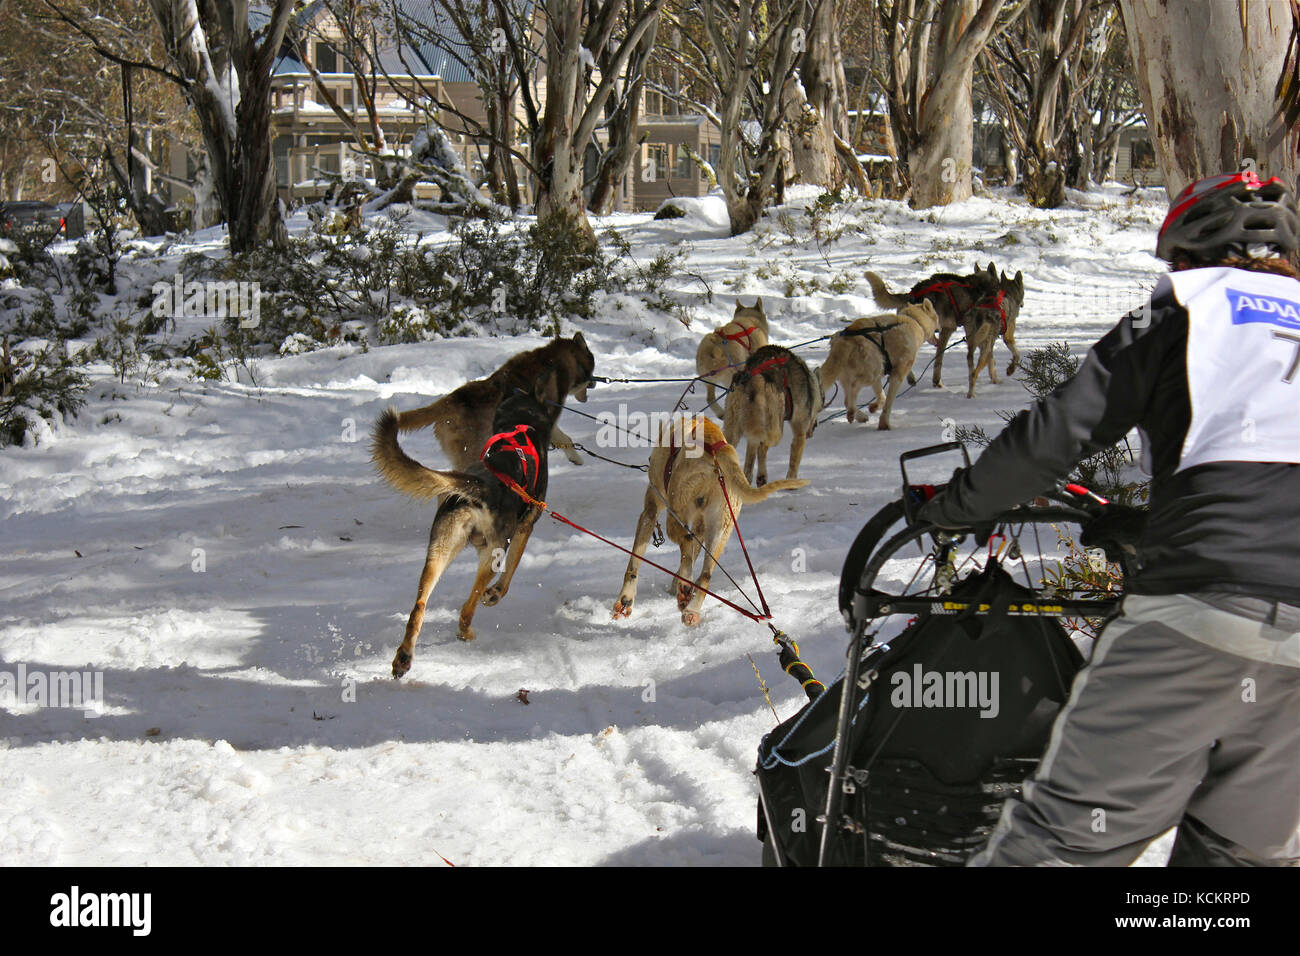 Course de chiens de traîneau avec un seul traîneau tiré par une équipe de chiens Husky le long d'un sentier enneigé. Dîner Plain, Alpes victoriennes, Victoria, Australie Banque D'Images